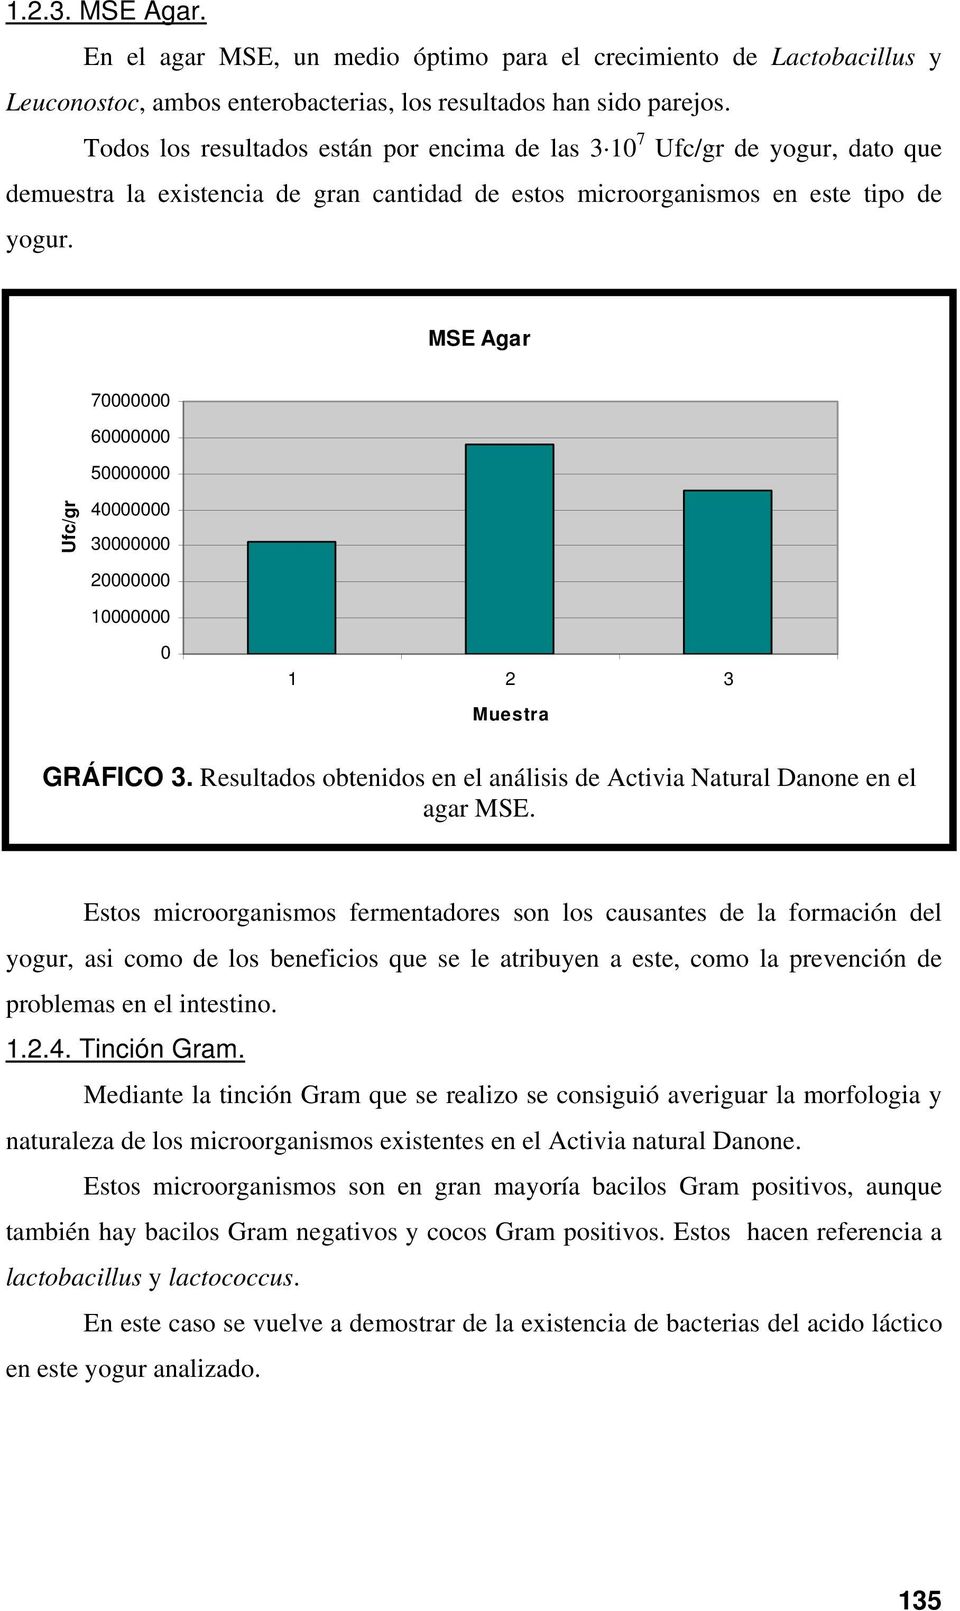 Resultados obtenidos en el análisis de Activia Natural Danone en el agar MSE.